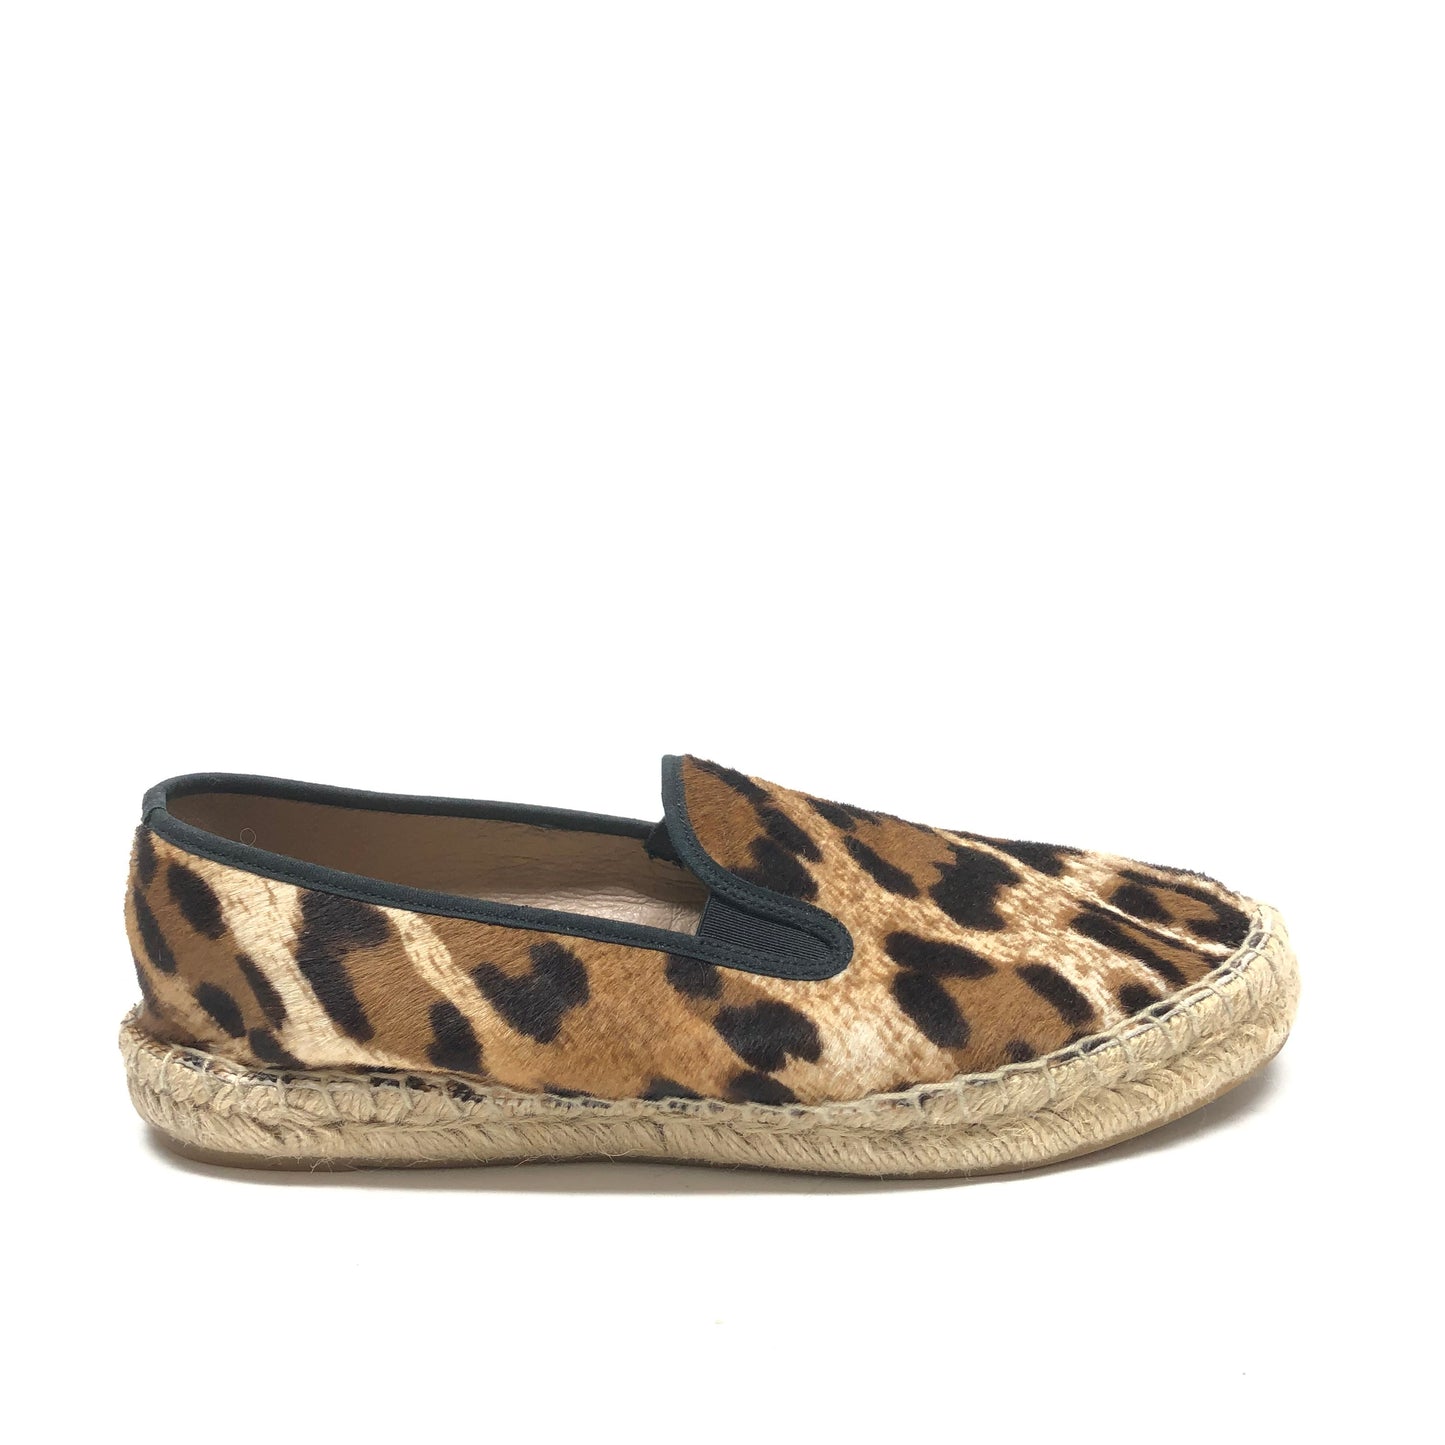 Leopard Print Shoes Flats J. Crew, Size 8